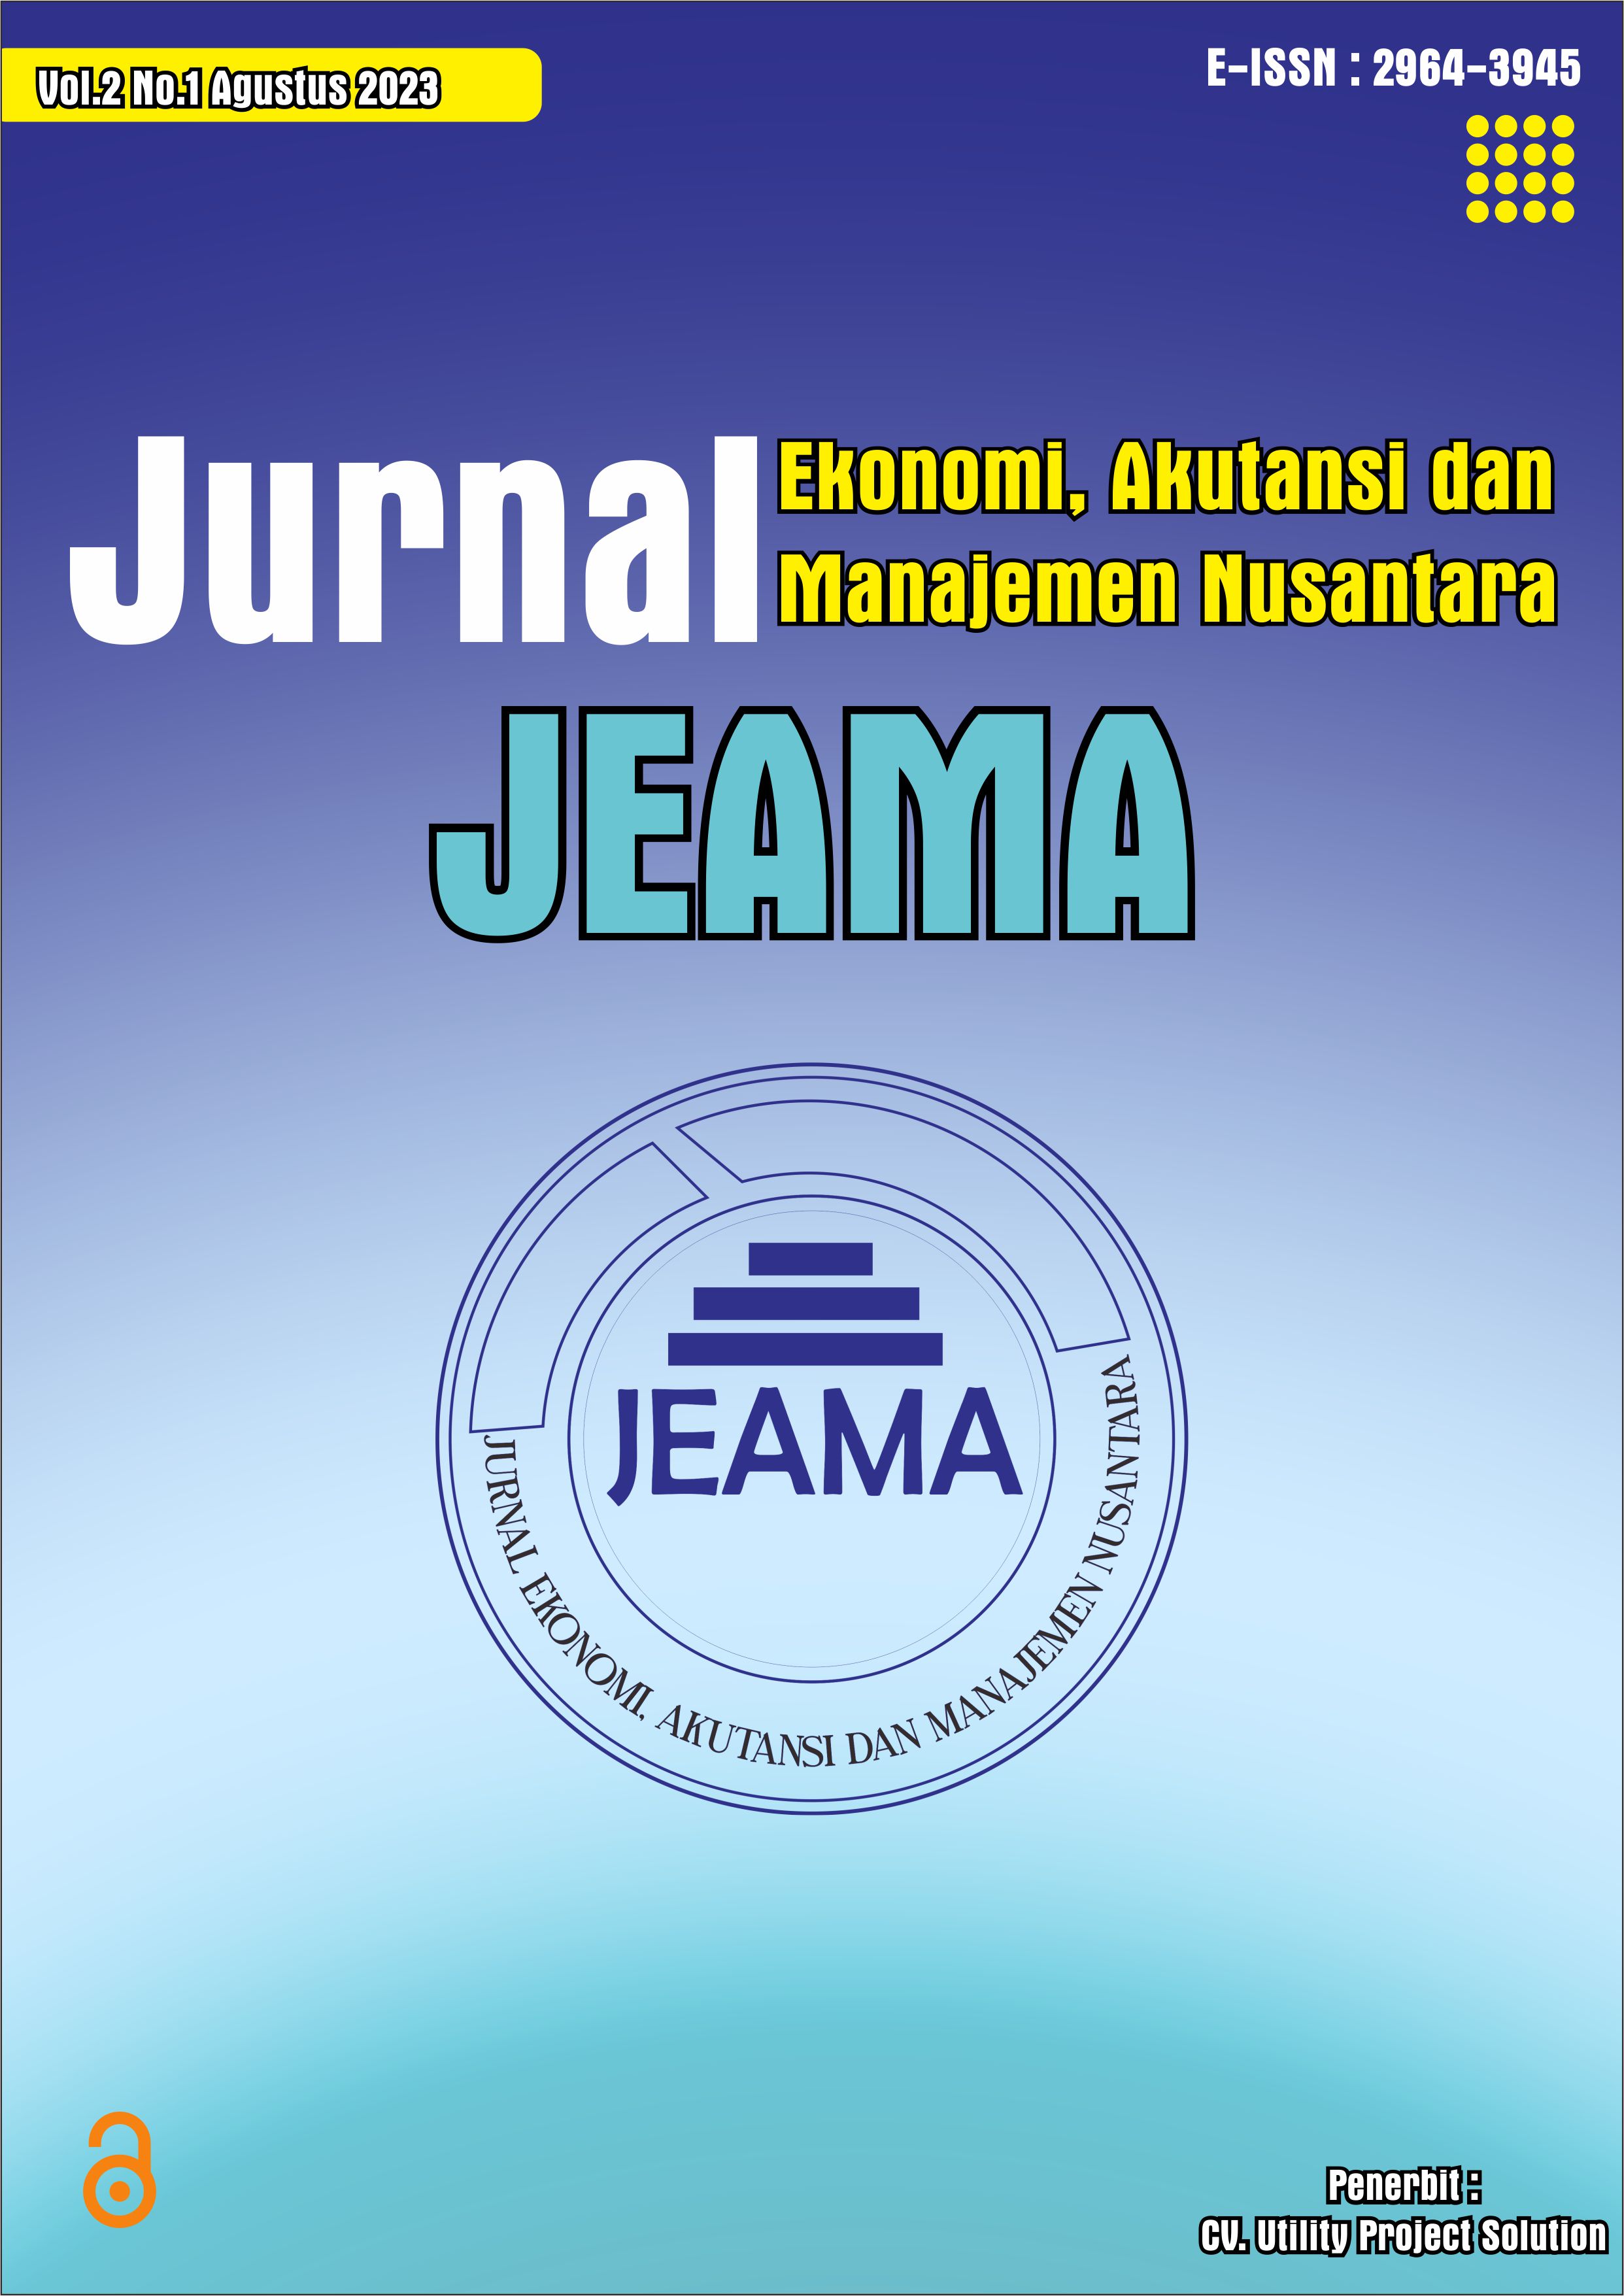 Jurnal Ekonomi, Akutasi dan Manajemen Nusantara